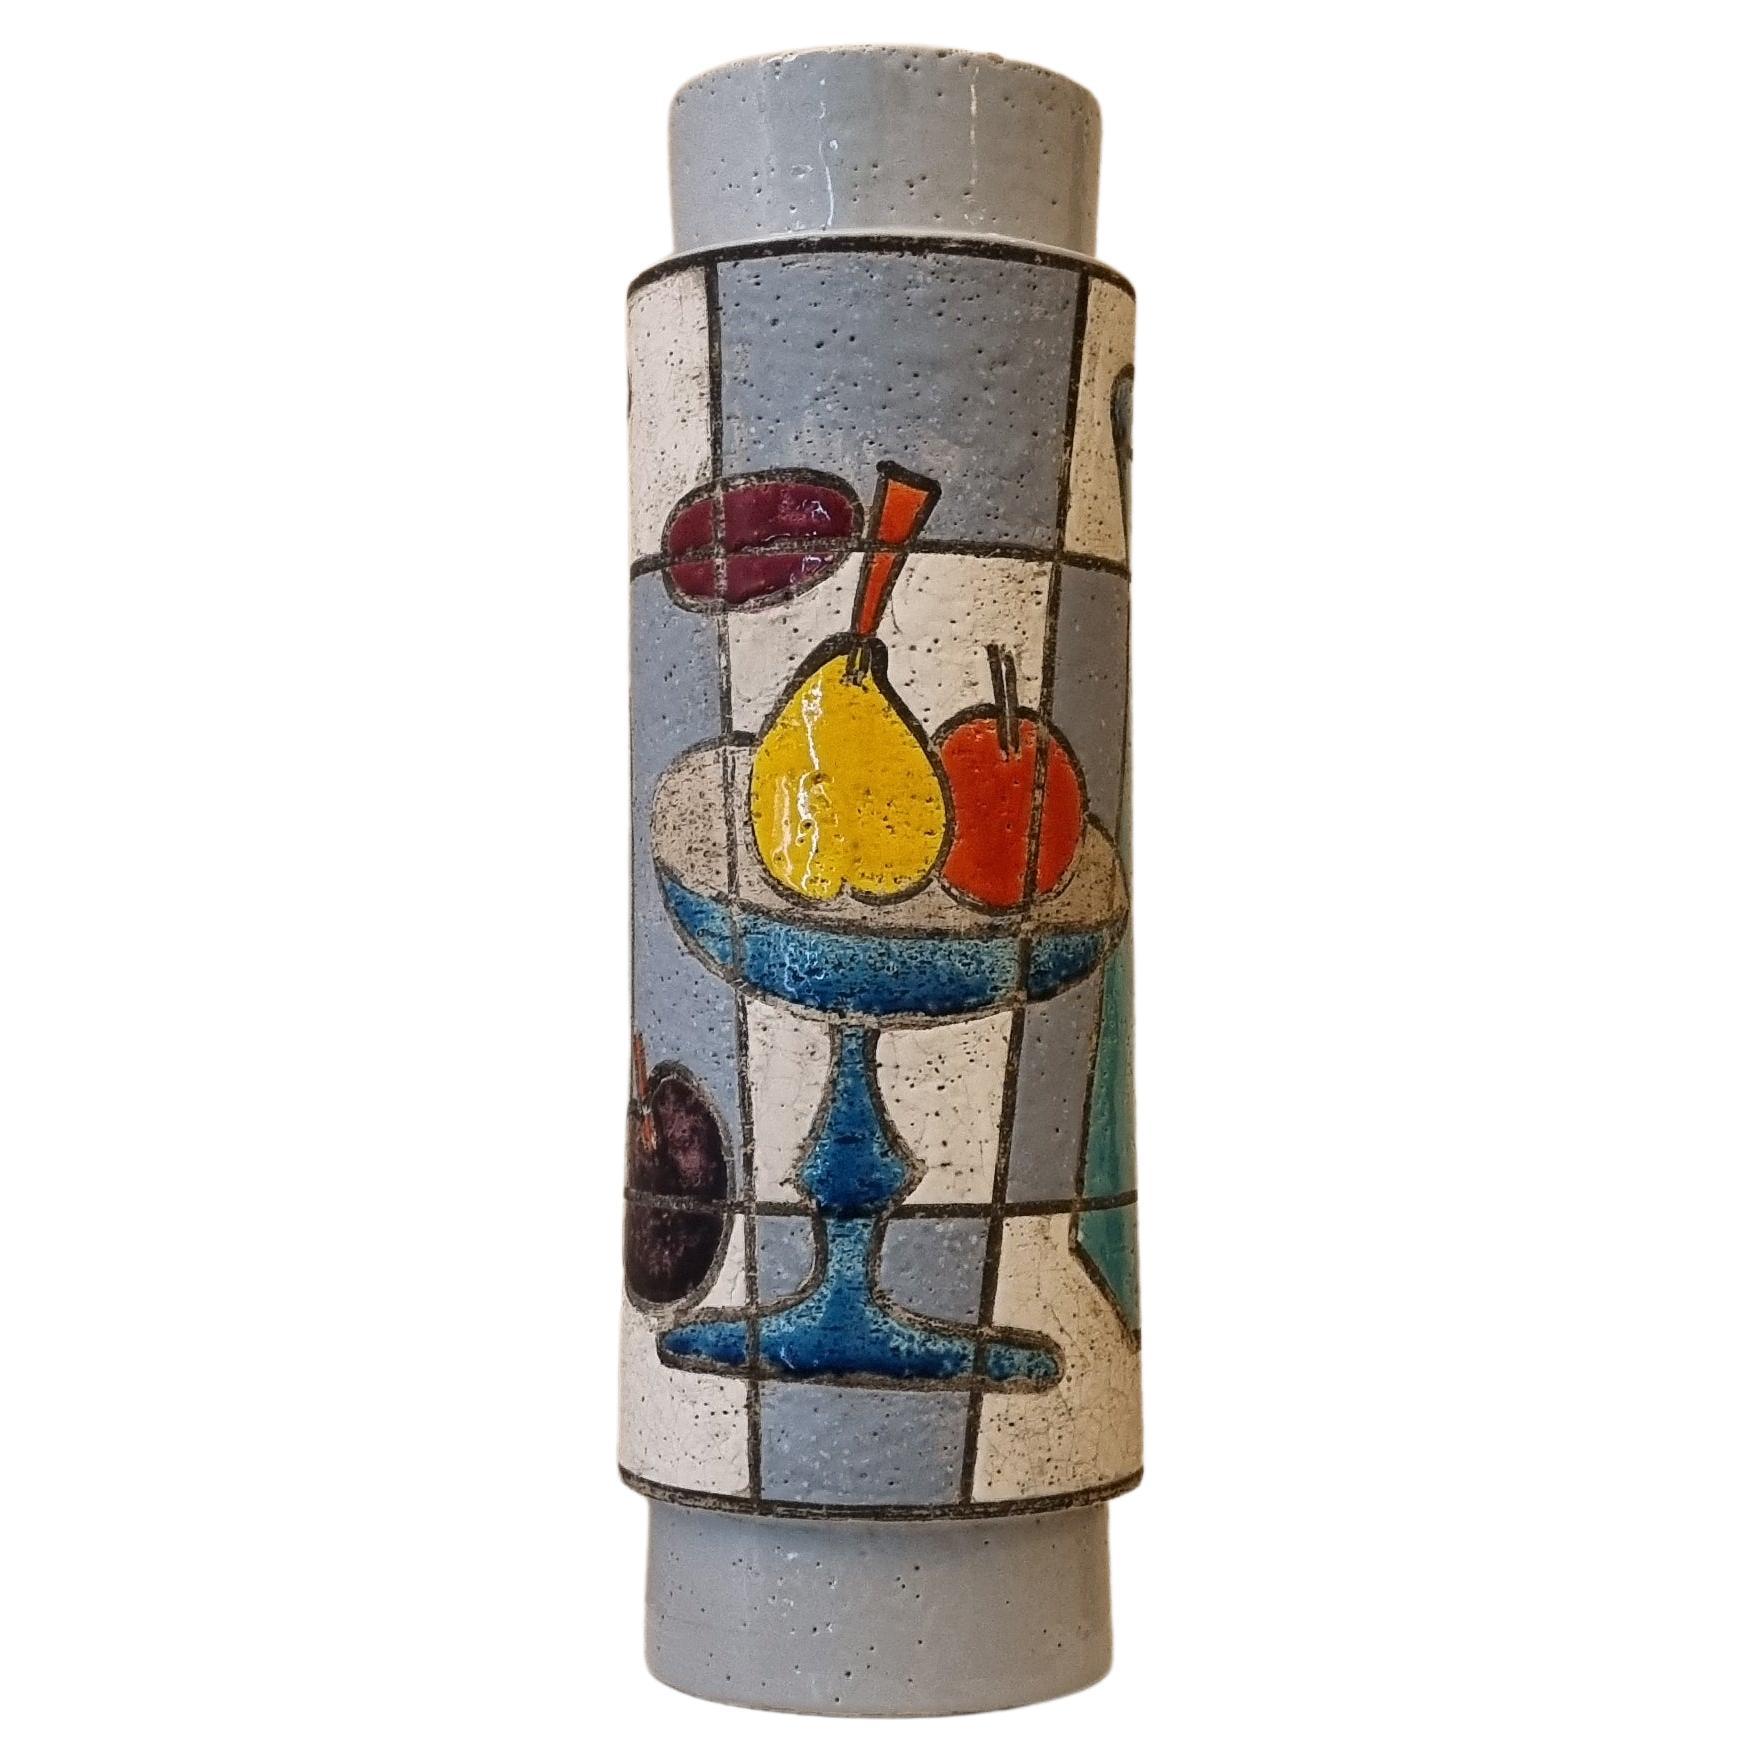 Vase mit Lampenhalter von Aldo Londi für Ceramiche Bitossi, 1970 Signiert.